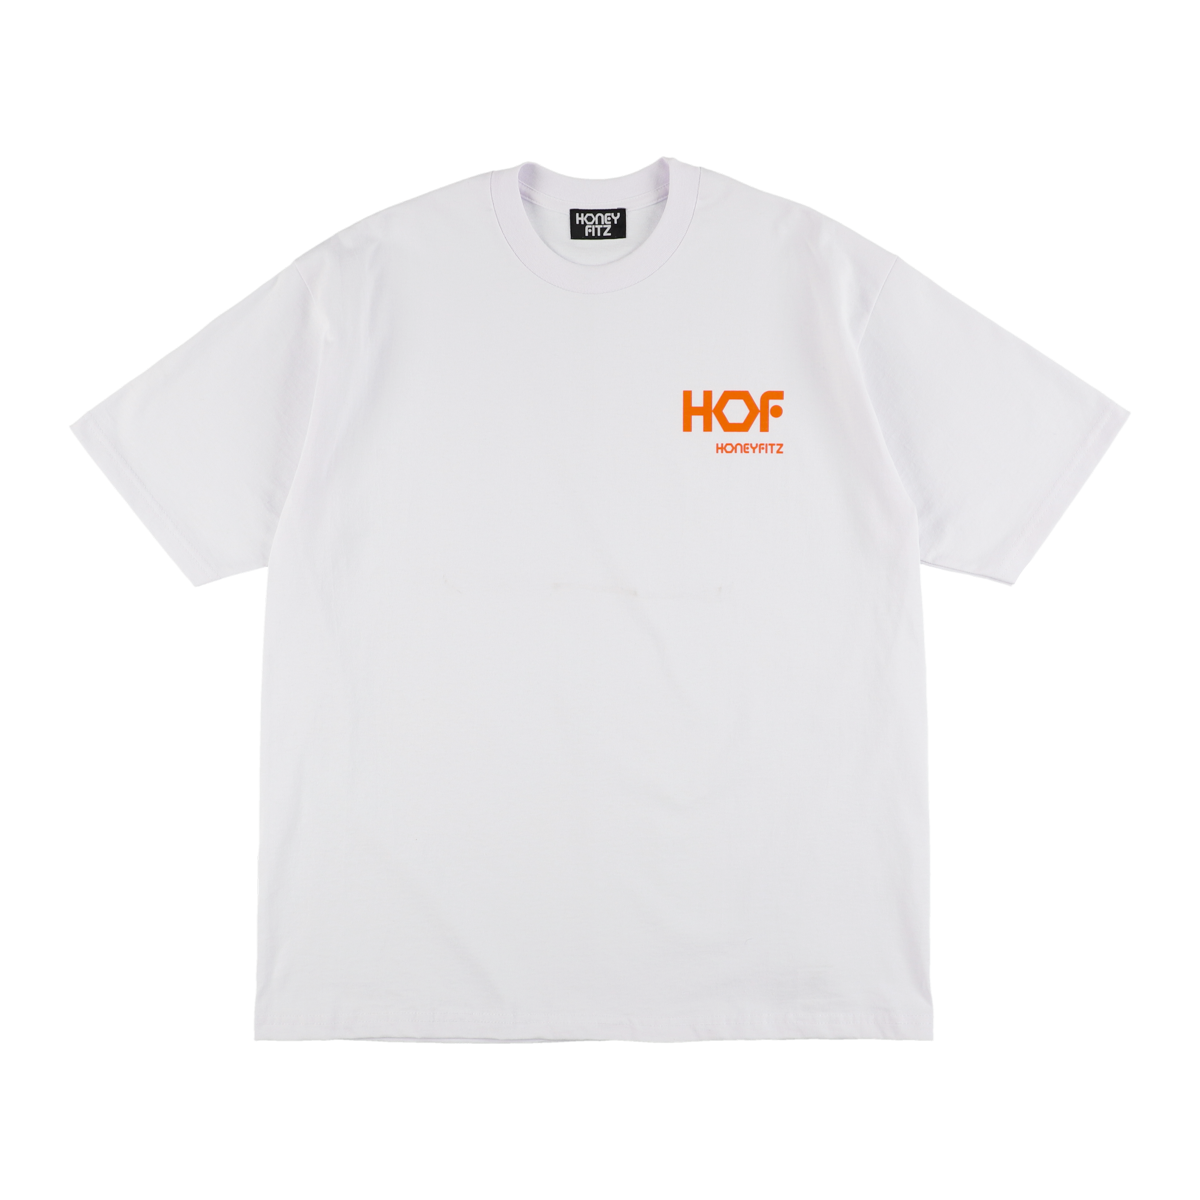 HOF S/ST HOF-0002 WHITE/ORANGE